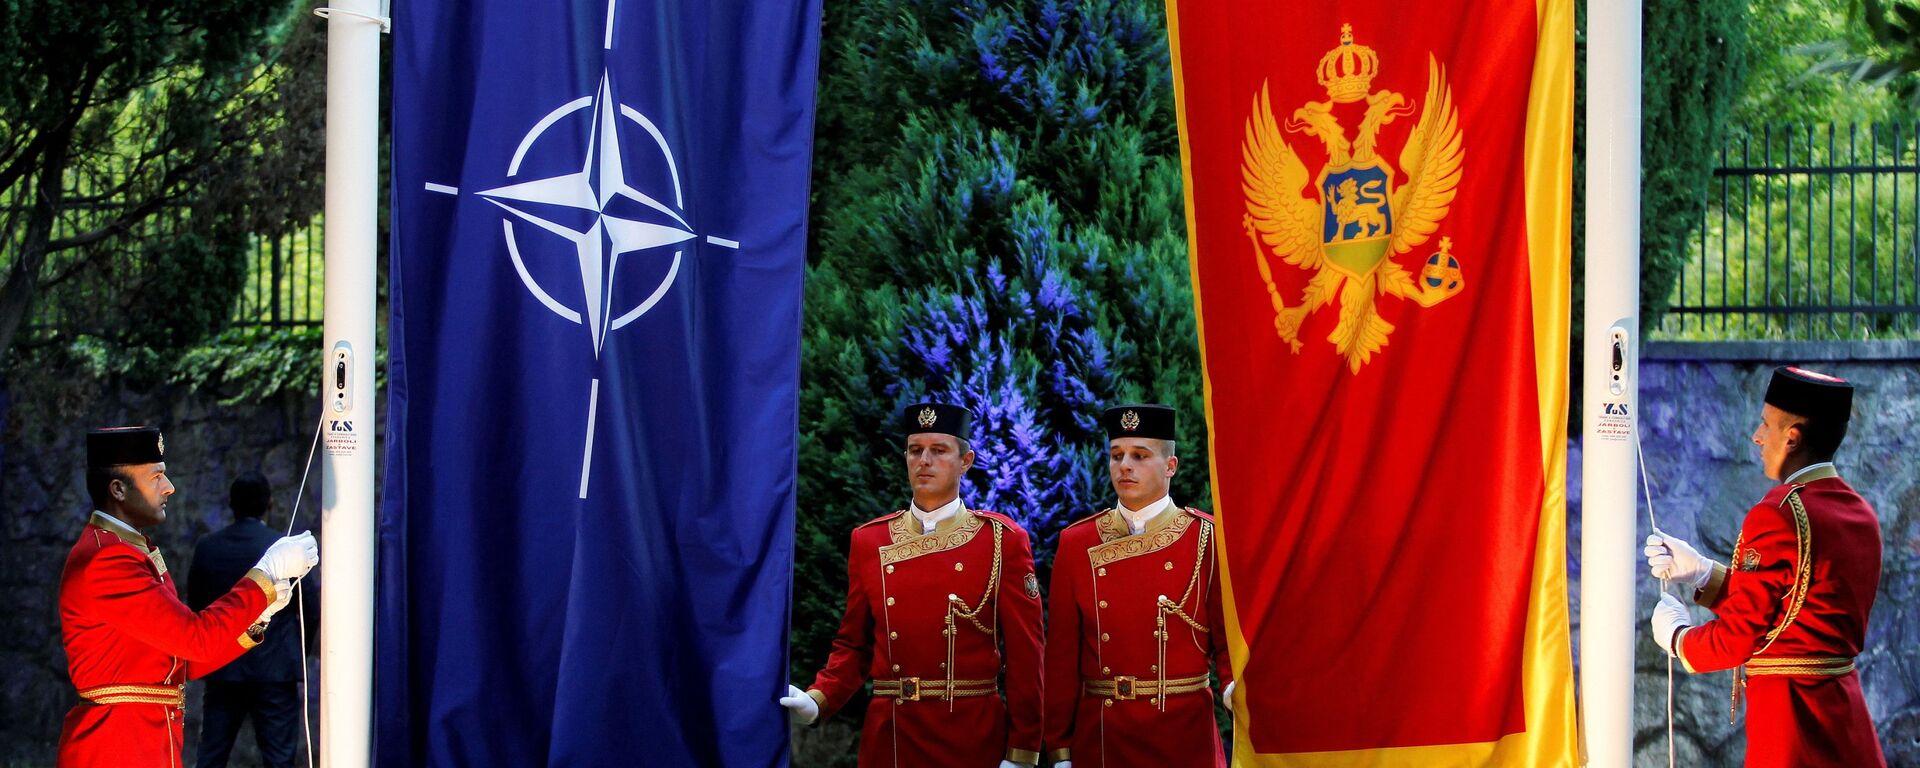 Zastave NATO i Crne Gore - Sputnik Srbija, 1920, 19.07.2021